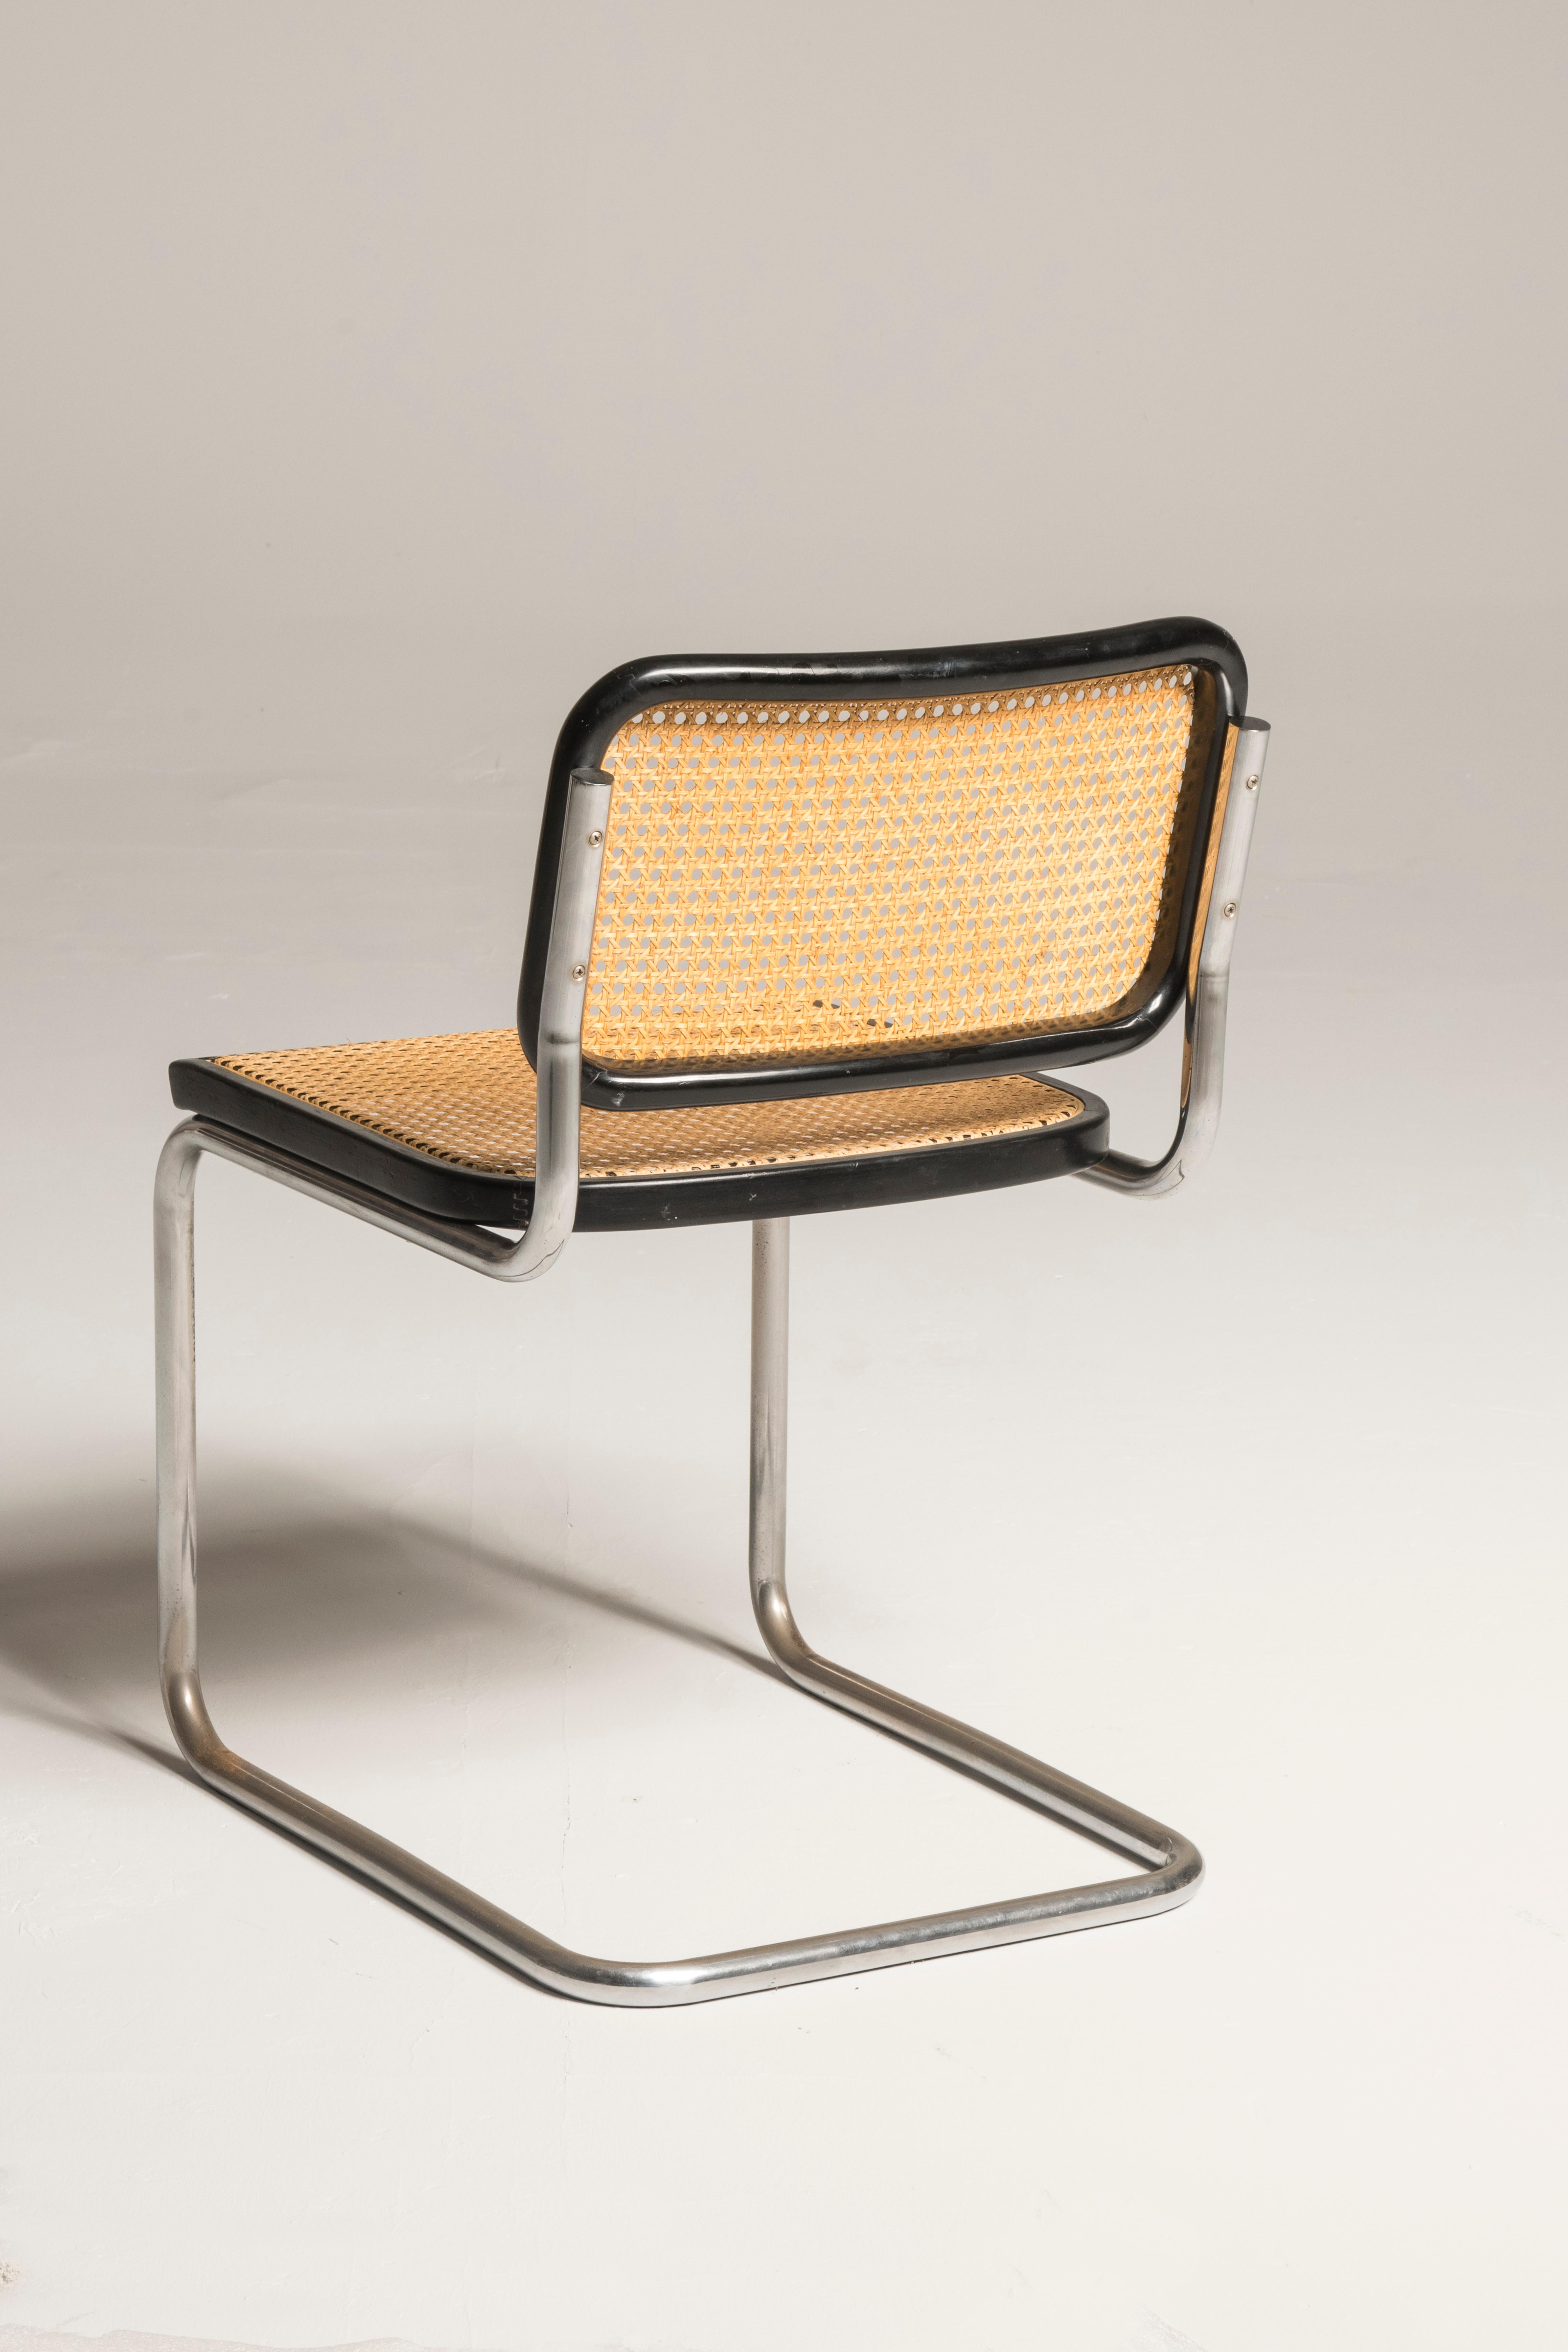 Fin du 20e siècle Chaises Cesca Bauhaus Marcel Breuer pour Knoll Production:: 8 chaises disponibles